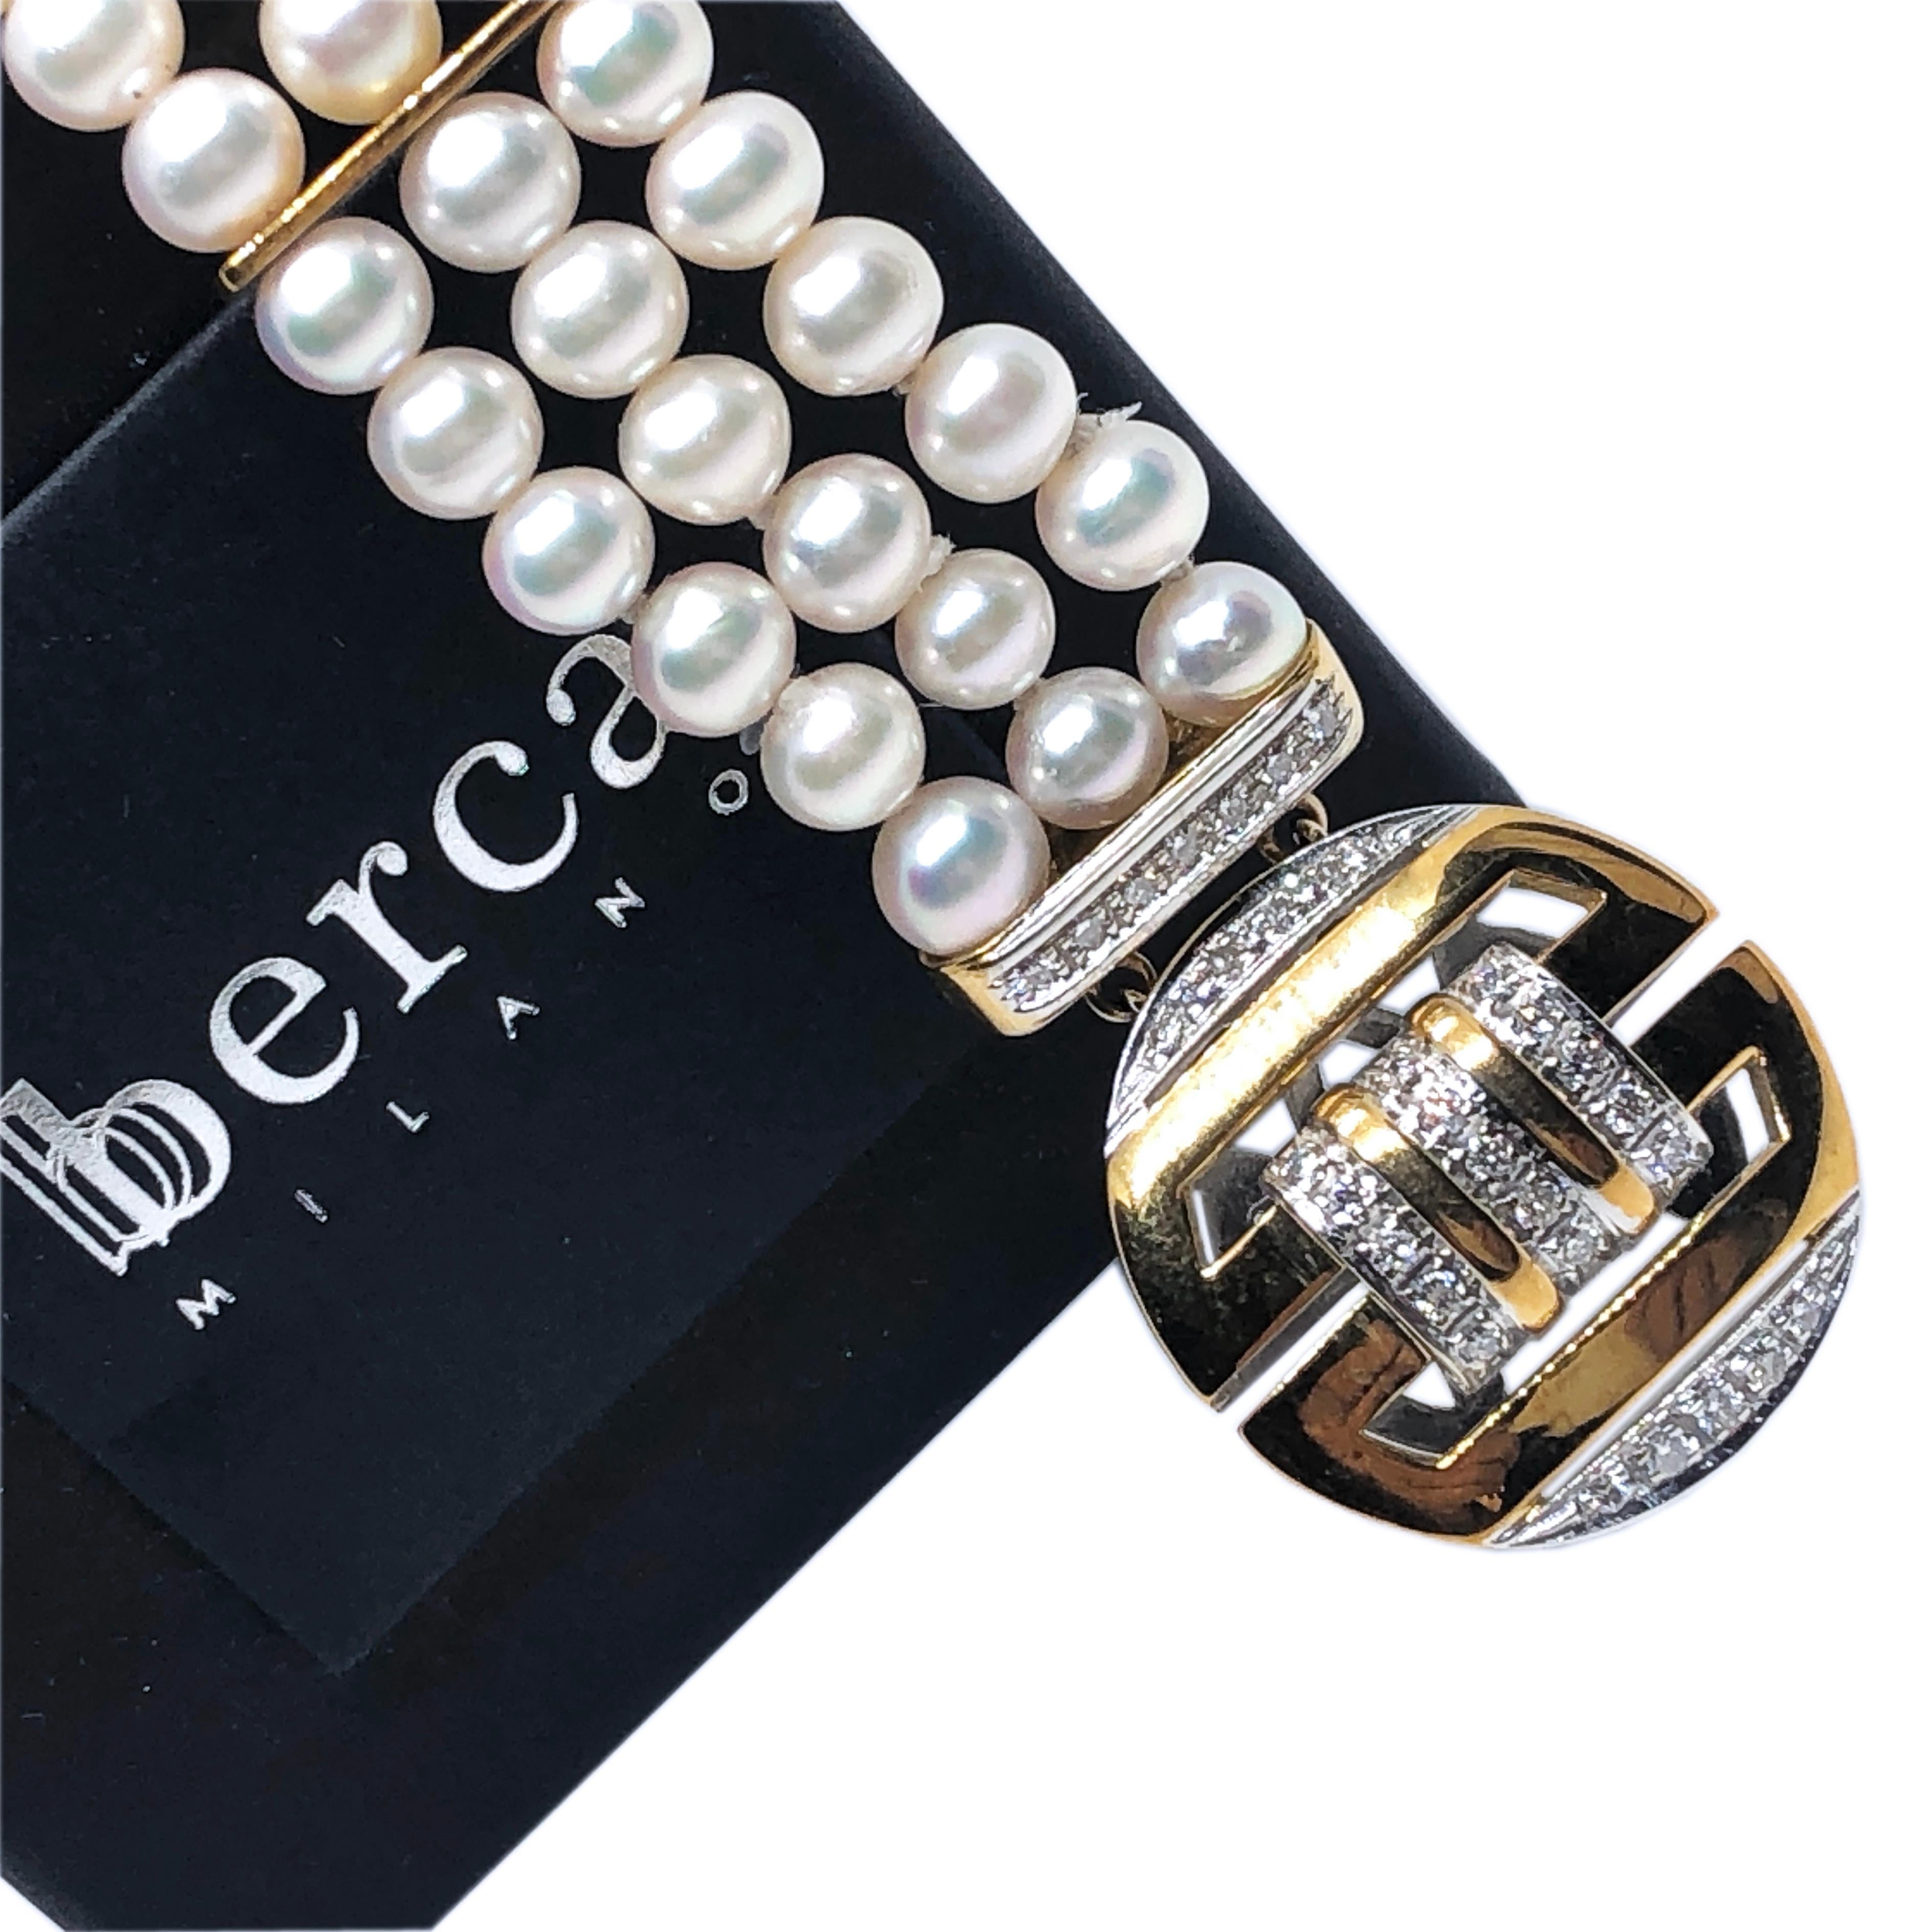 Somptueux bracelet absolument chic et intemporel présentant une perle Akoya japonaise à trois rangs, terminée par un diamant blanc de 0,57 carat (F-G, VVS1) et 0,76 ozT, le tout serti d'or blanc et jaune 18K et d'un fermoir en forme de symbole